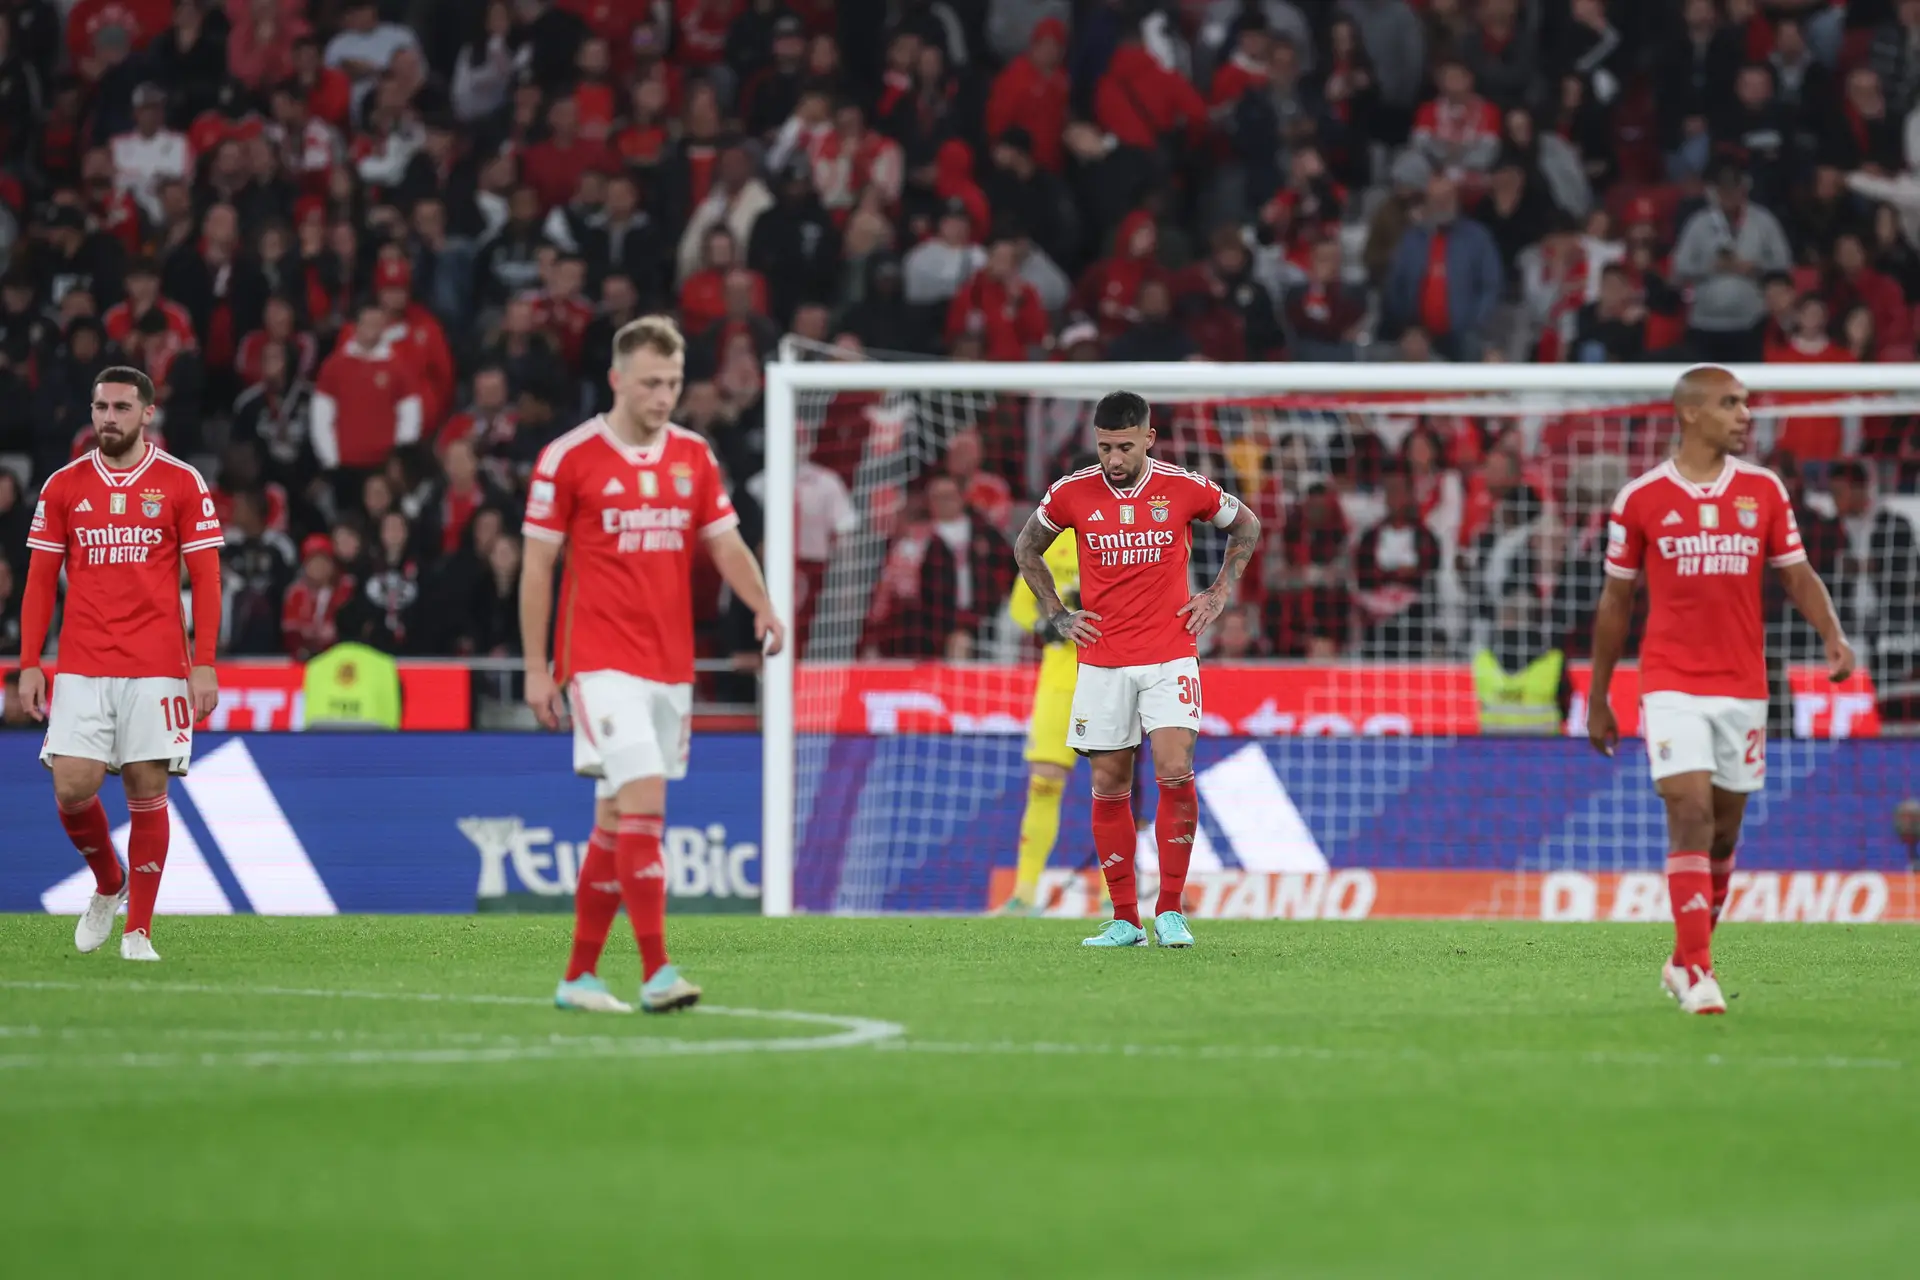 II Liga: Leixões e Benfica empataram em jogo decidido na primeira